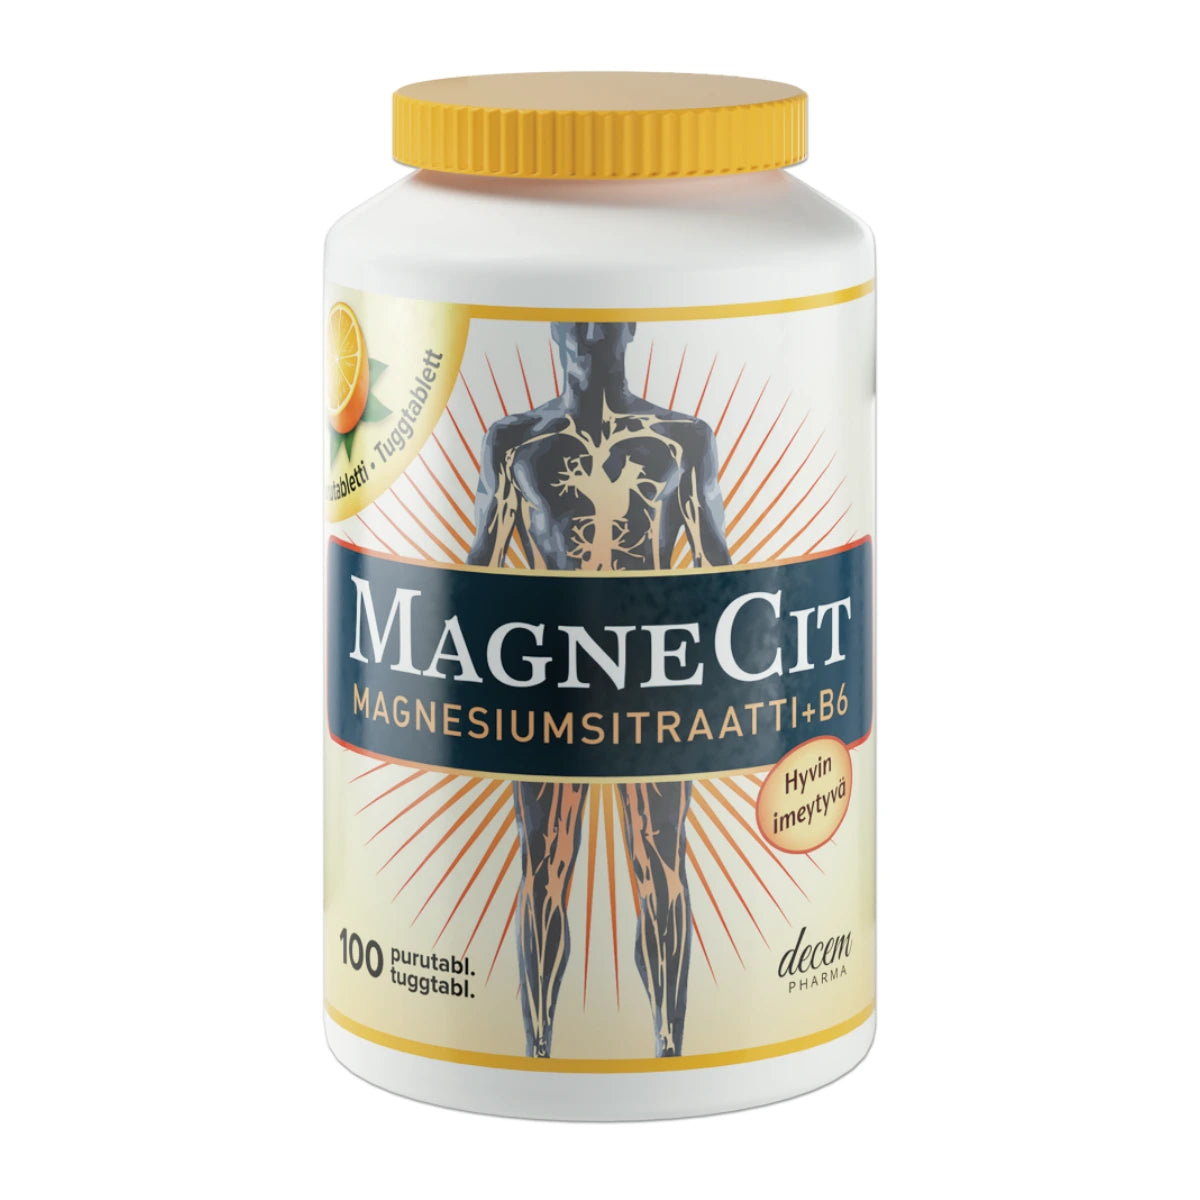 MAGNECIT Magnesiumsitraatti + B6 purutabletti 100 kpl appelsiininmakuinen purutabletti 